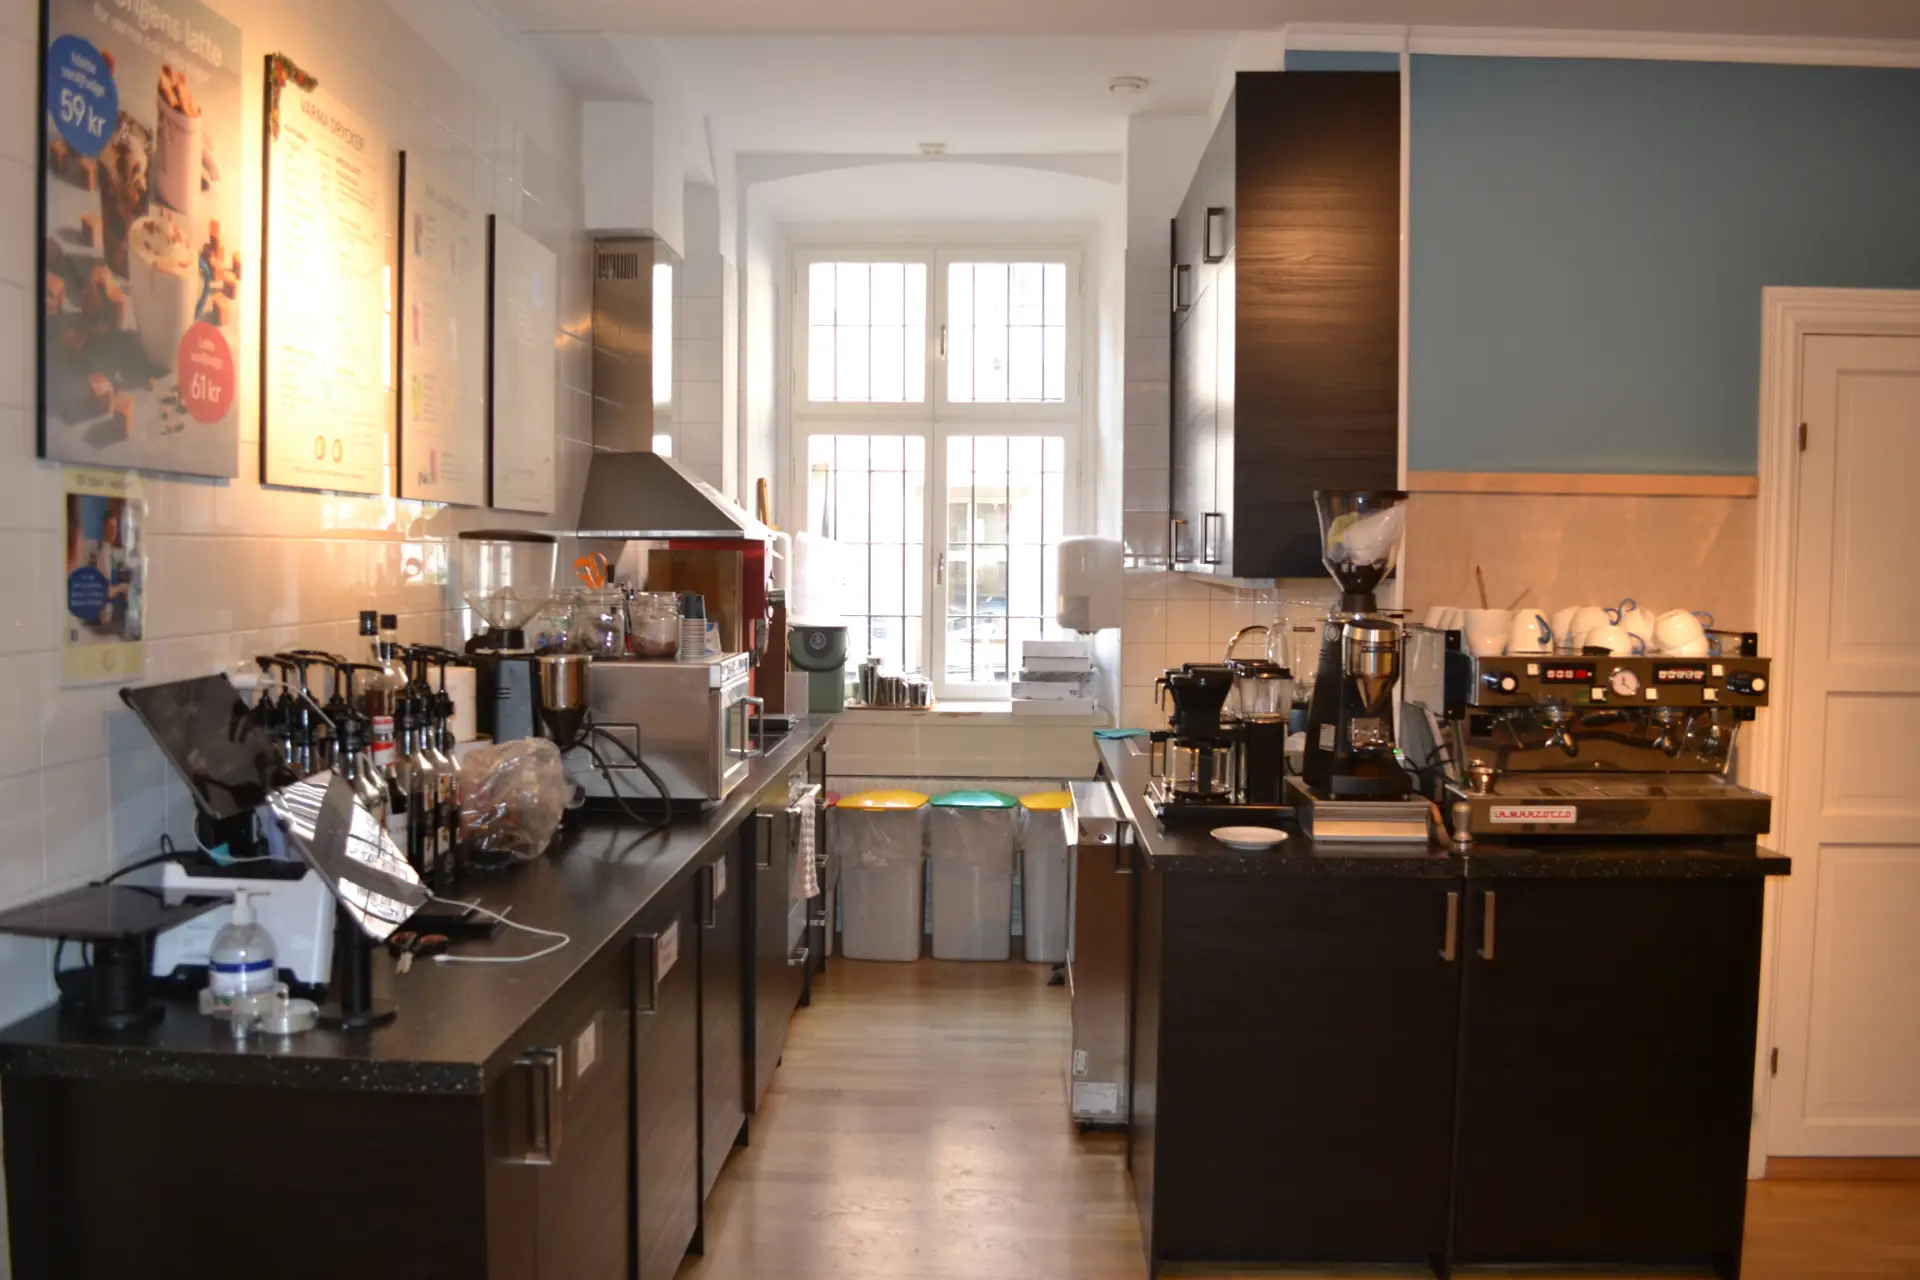 Interiör i ett mysigt kafékök med espressomaskiner, kvarnar och andra köksapparater som tar upp stora delar av köksbänkarna.